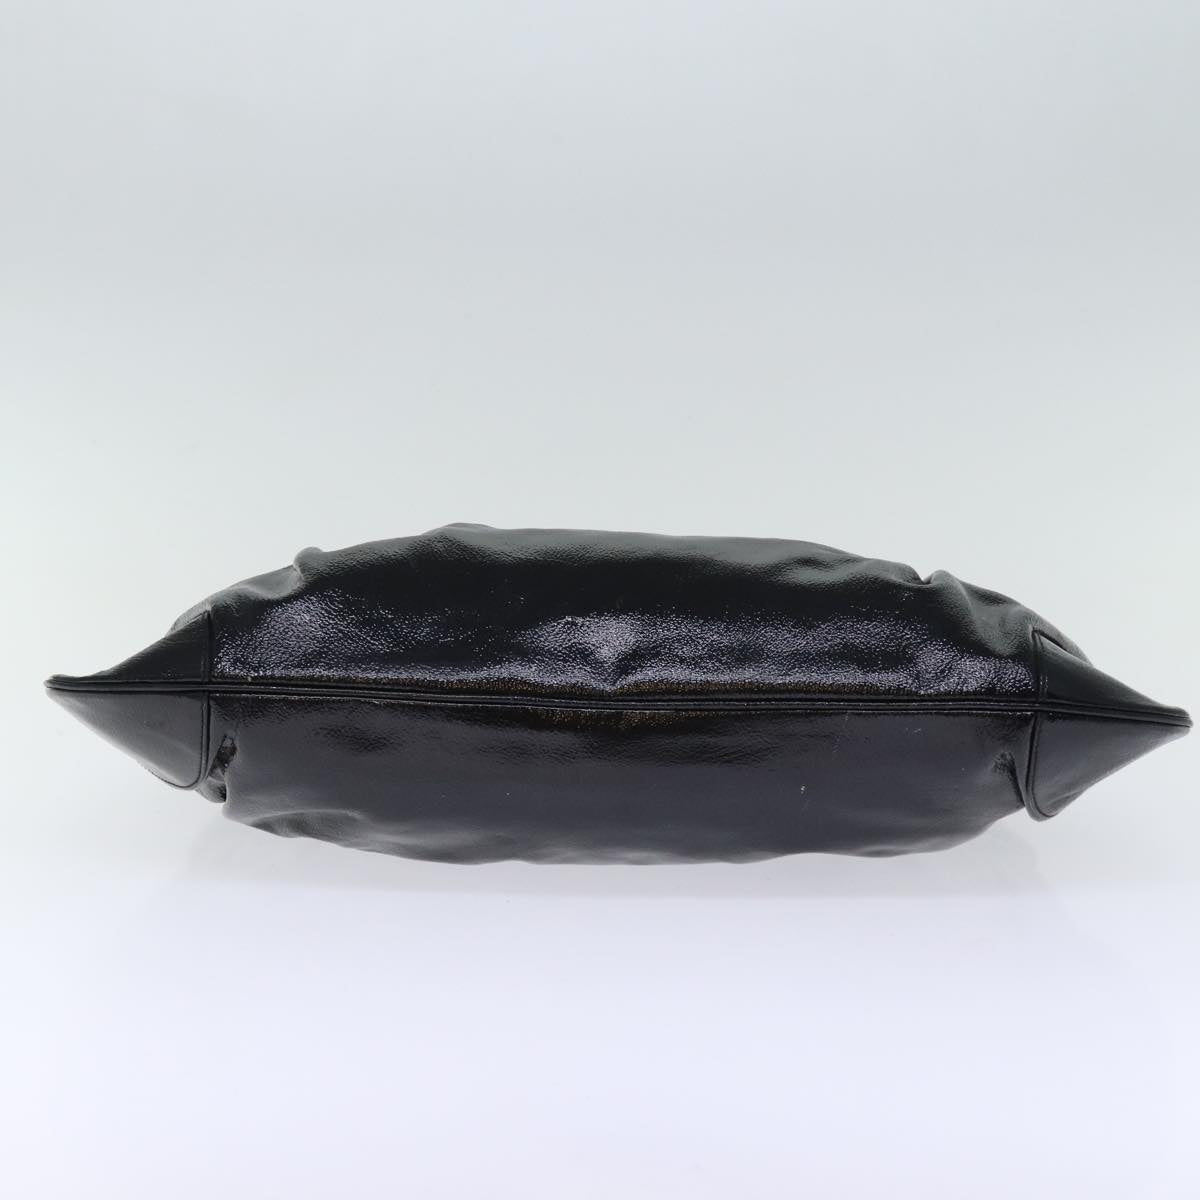 Salvatore Ferragamo Gancini Shoulder Bag patent Black Auth 73450